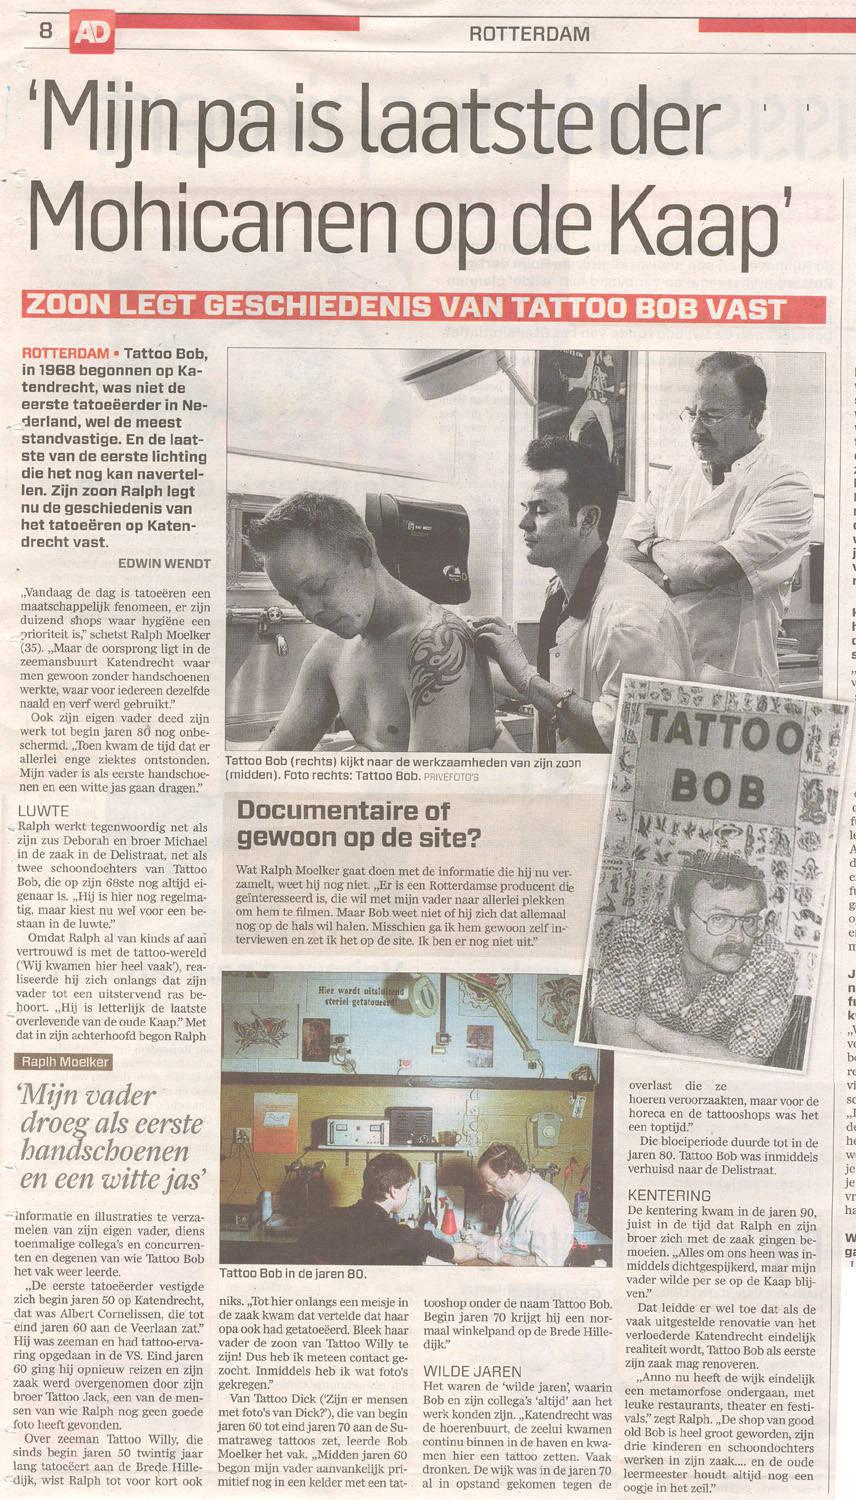 Artikel AD 'Zoon legt geschiedenis van Tattoo Bob vast